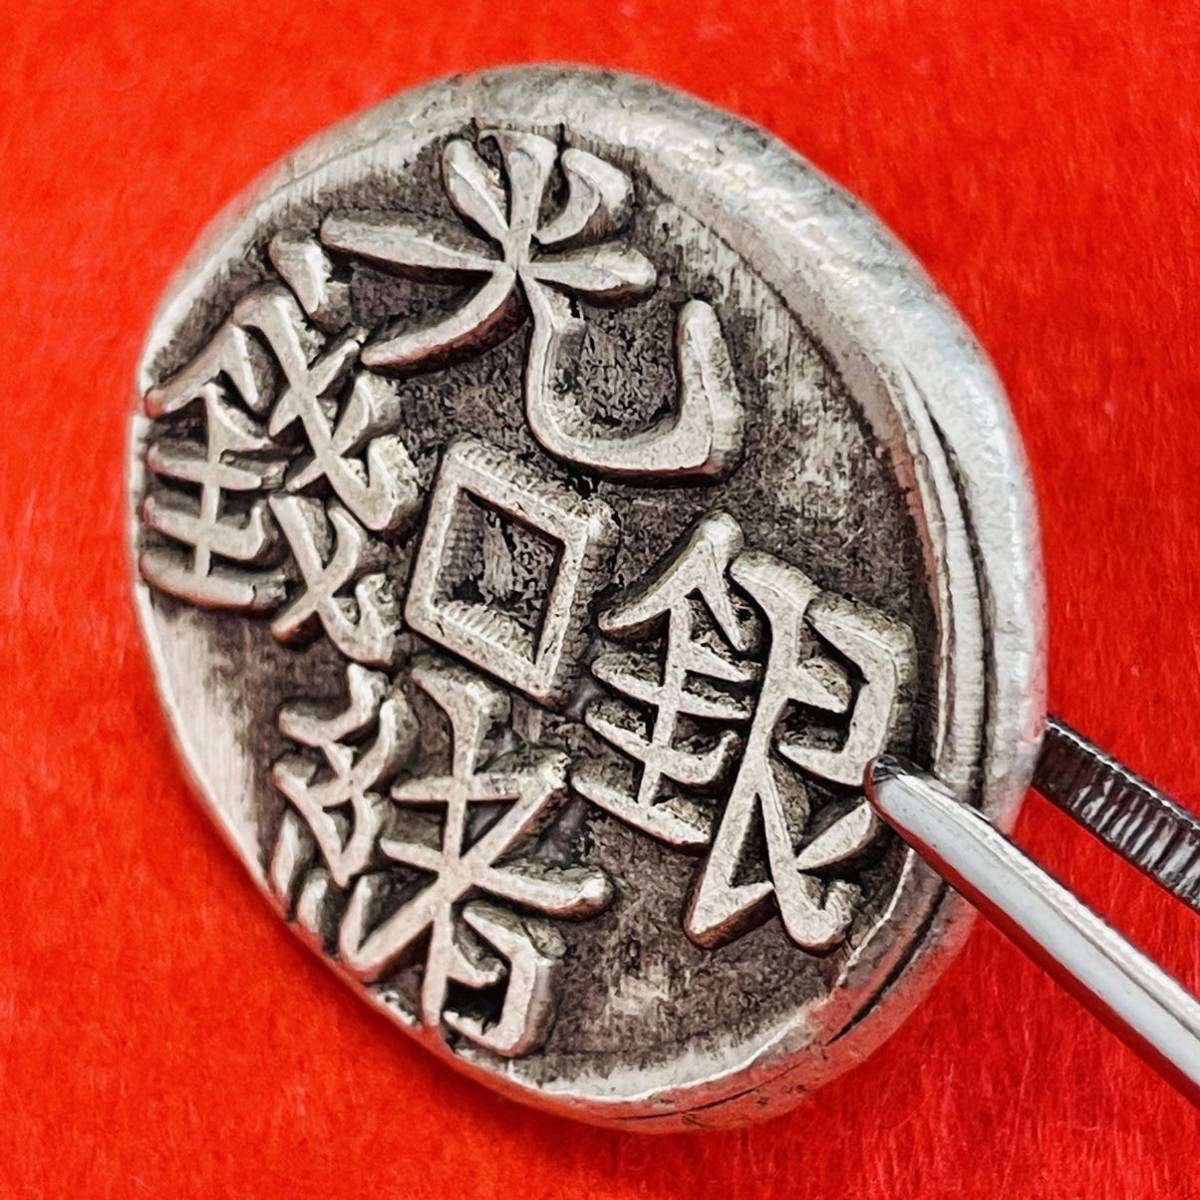 新しい 古文銭 垣字銭 古銭 穴銭 銅貨 紀元前 古代 コイン 骨董 